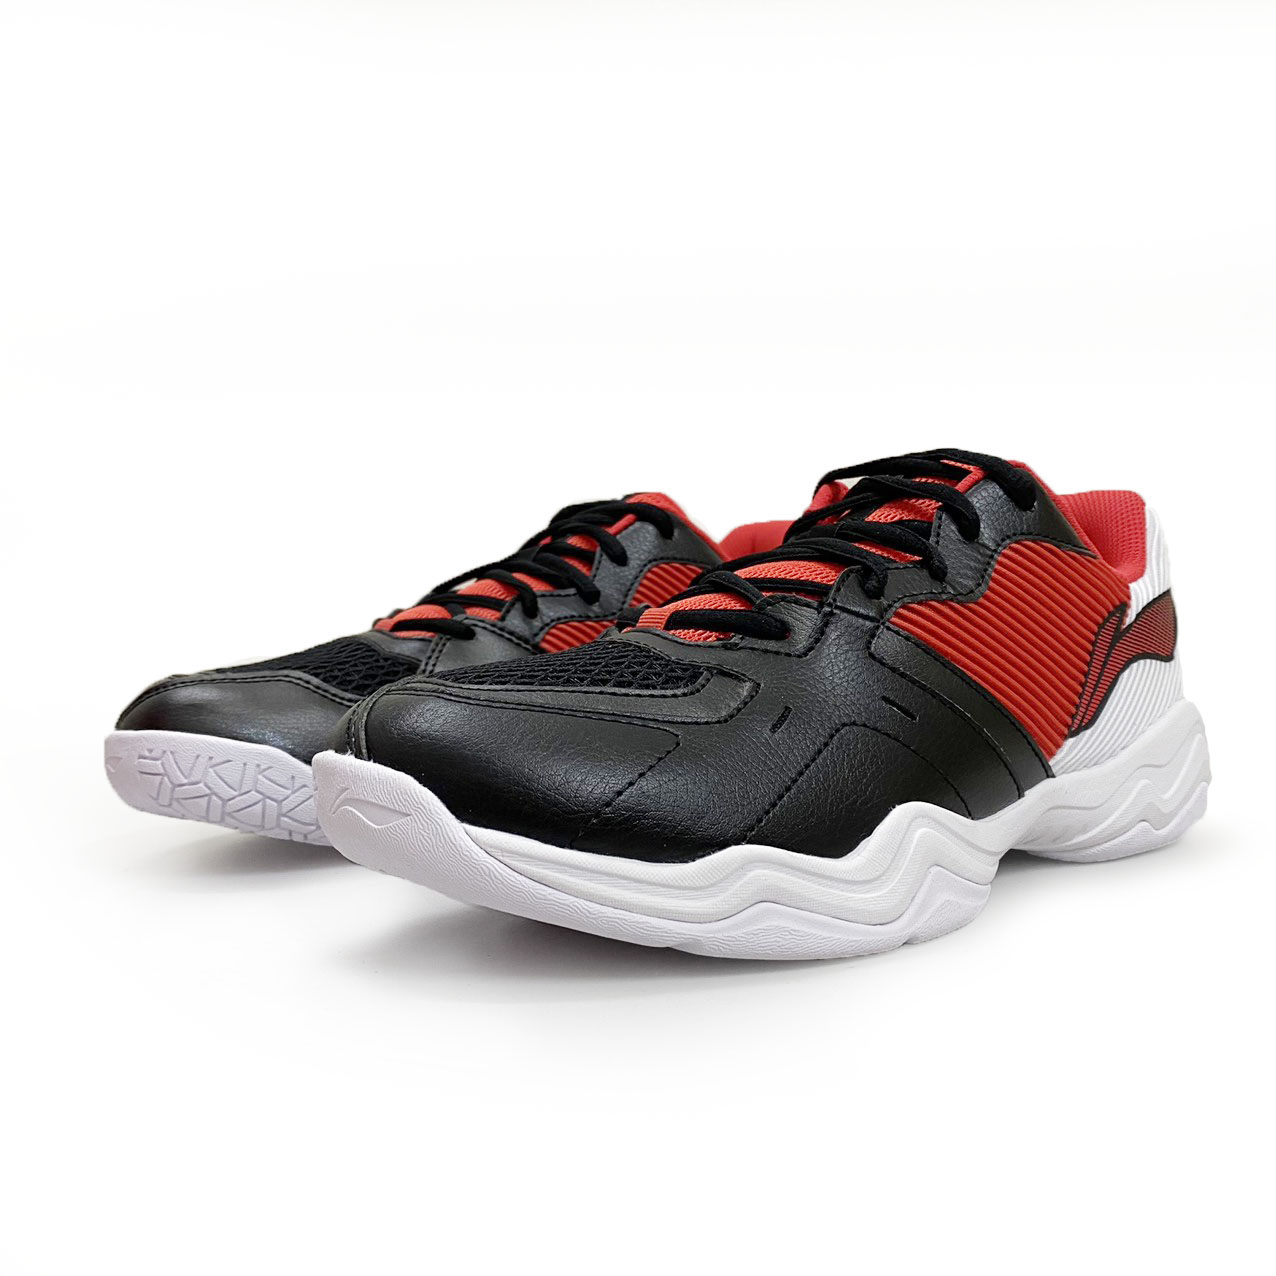 Giày cầu lông lining AYTS016-20 chính hãng mẫu mới màu đen đỏ-tặng tất thể thao bendu